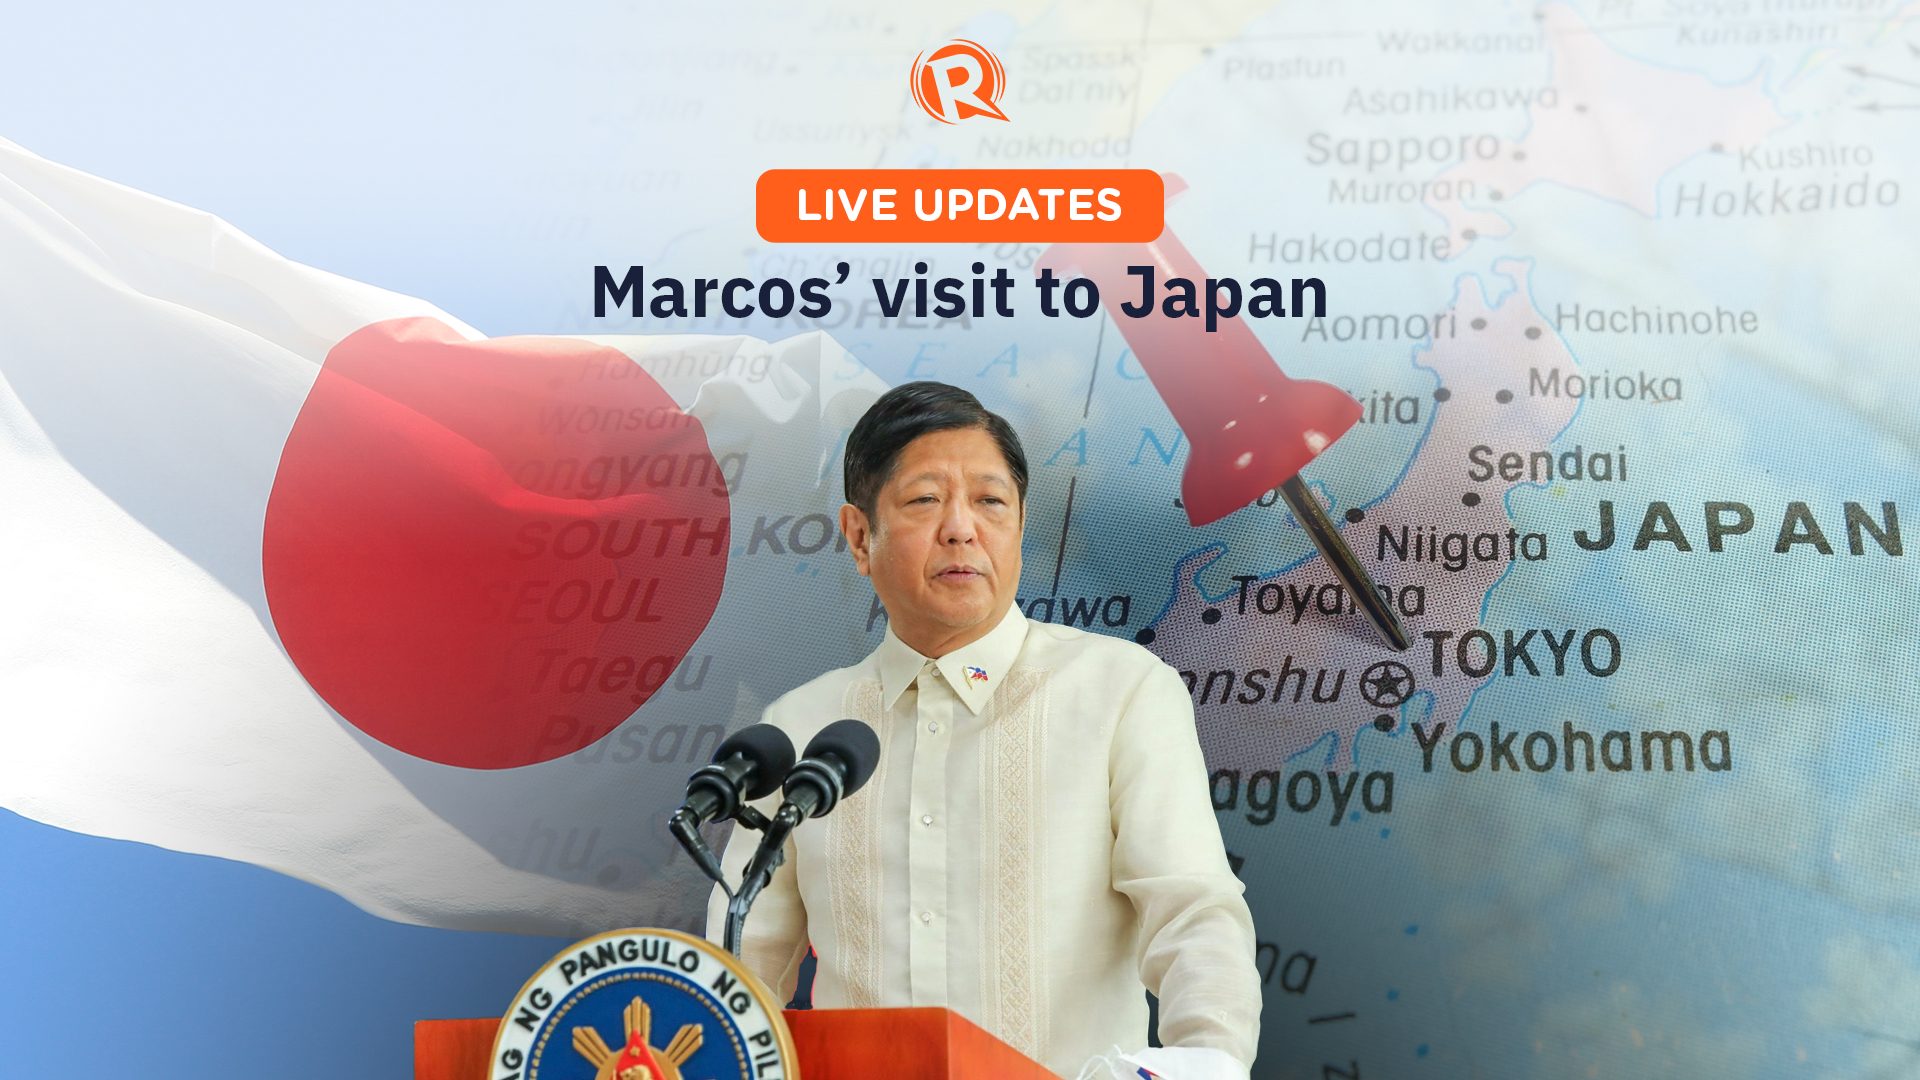 HIGHLIGHTS: Marcos visits Japan